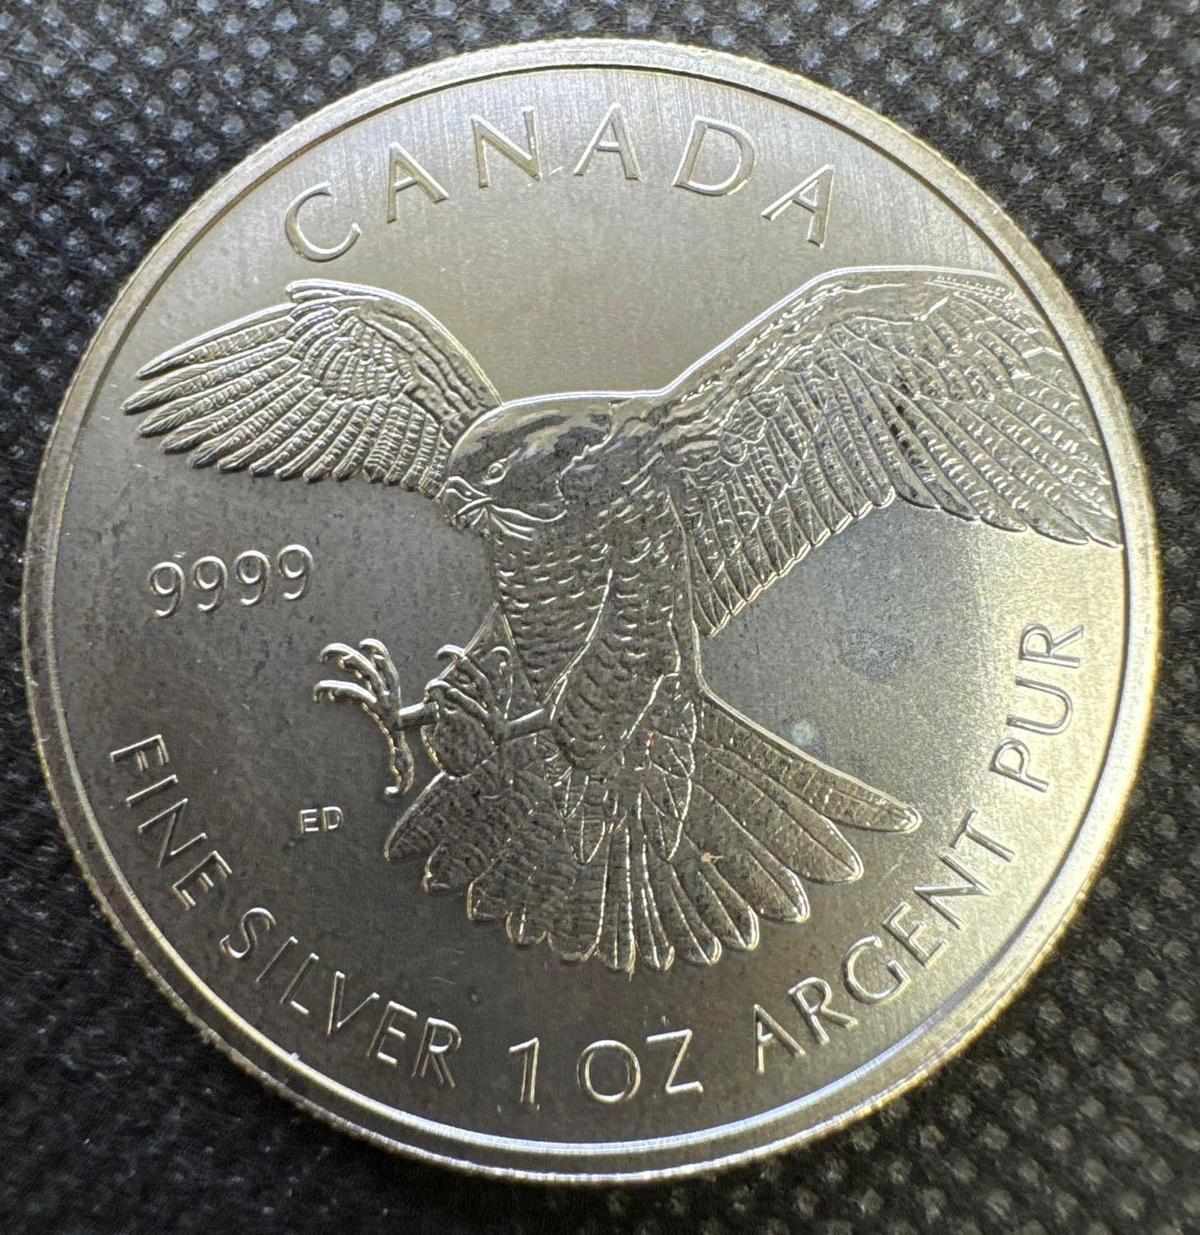 2014 Canadian Hawk 1 Troy Oz .9999 Fine Silver $5 Round Bullion Coin